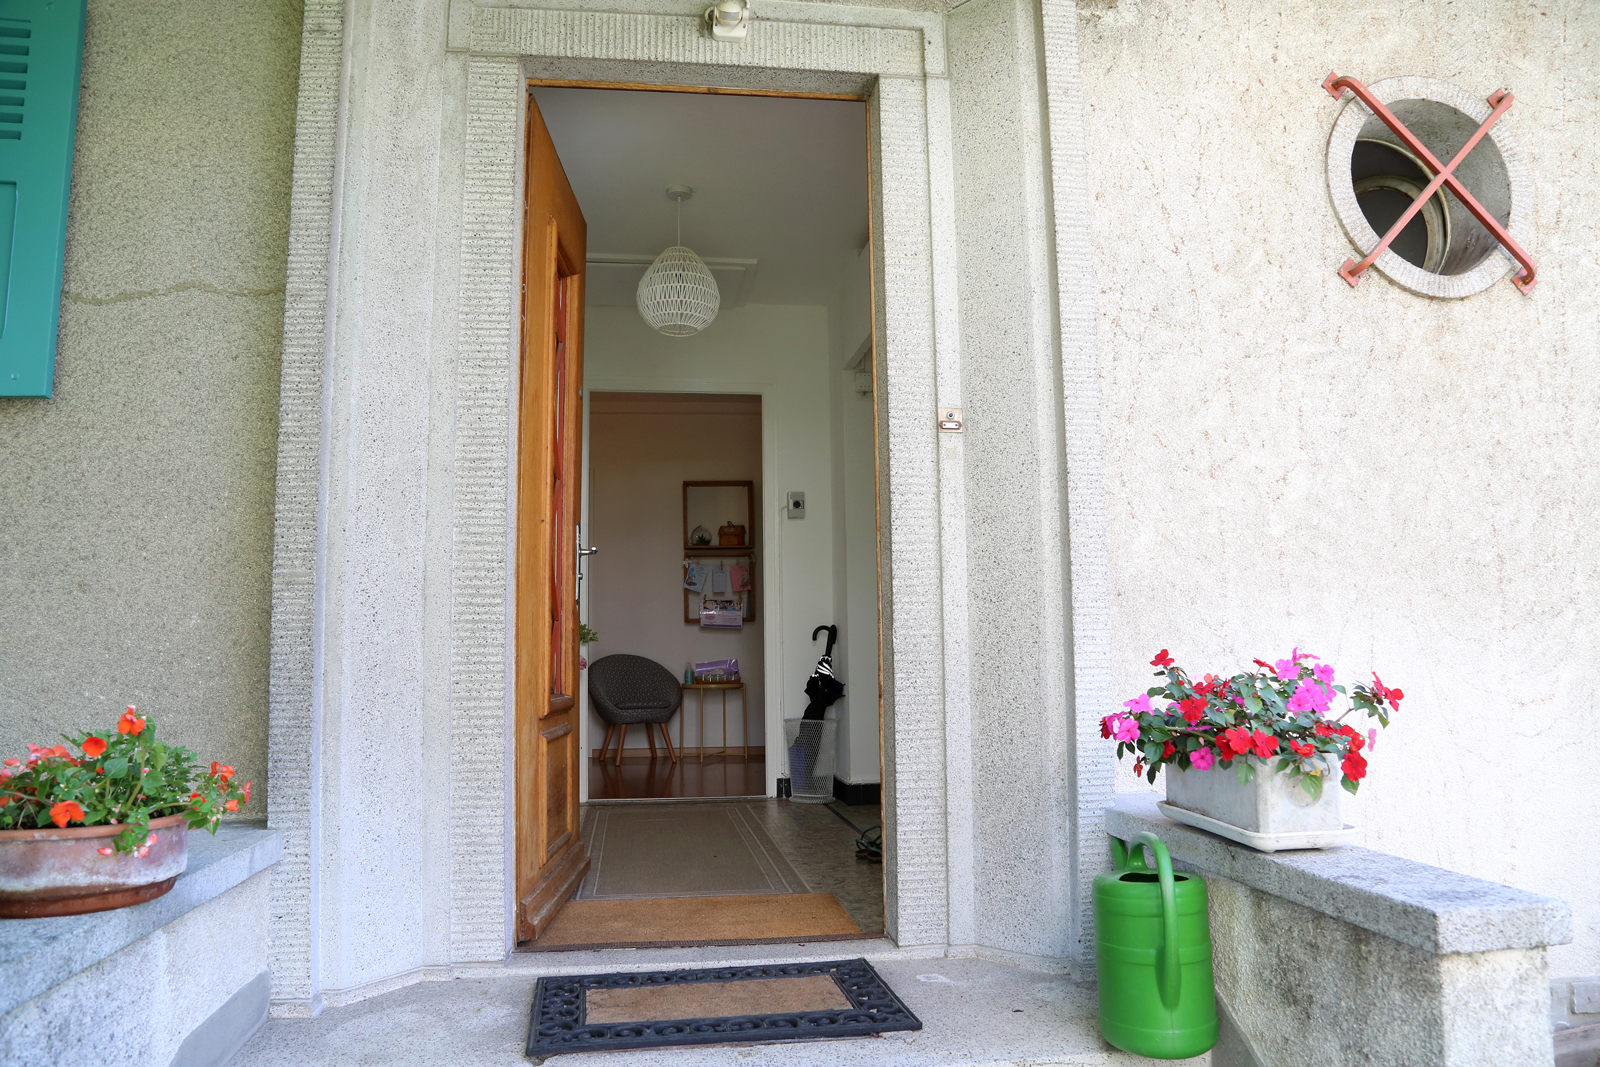 La maison de naissance Eden ouvrira bientôt ses portes à Lausanne, à deux pas du Chuv. Une atmosphère chaleureuse dans une petite maison charmante.